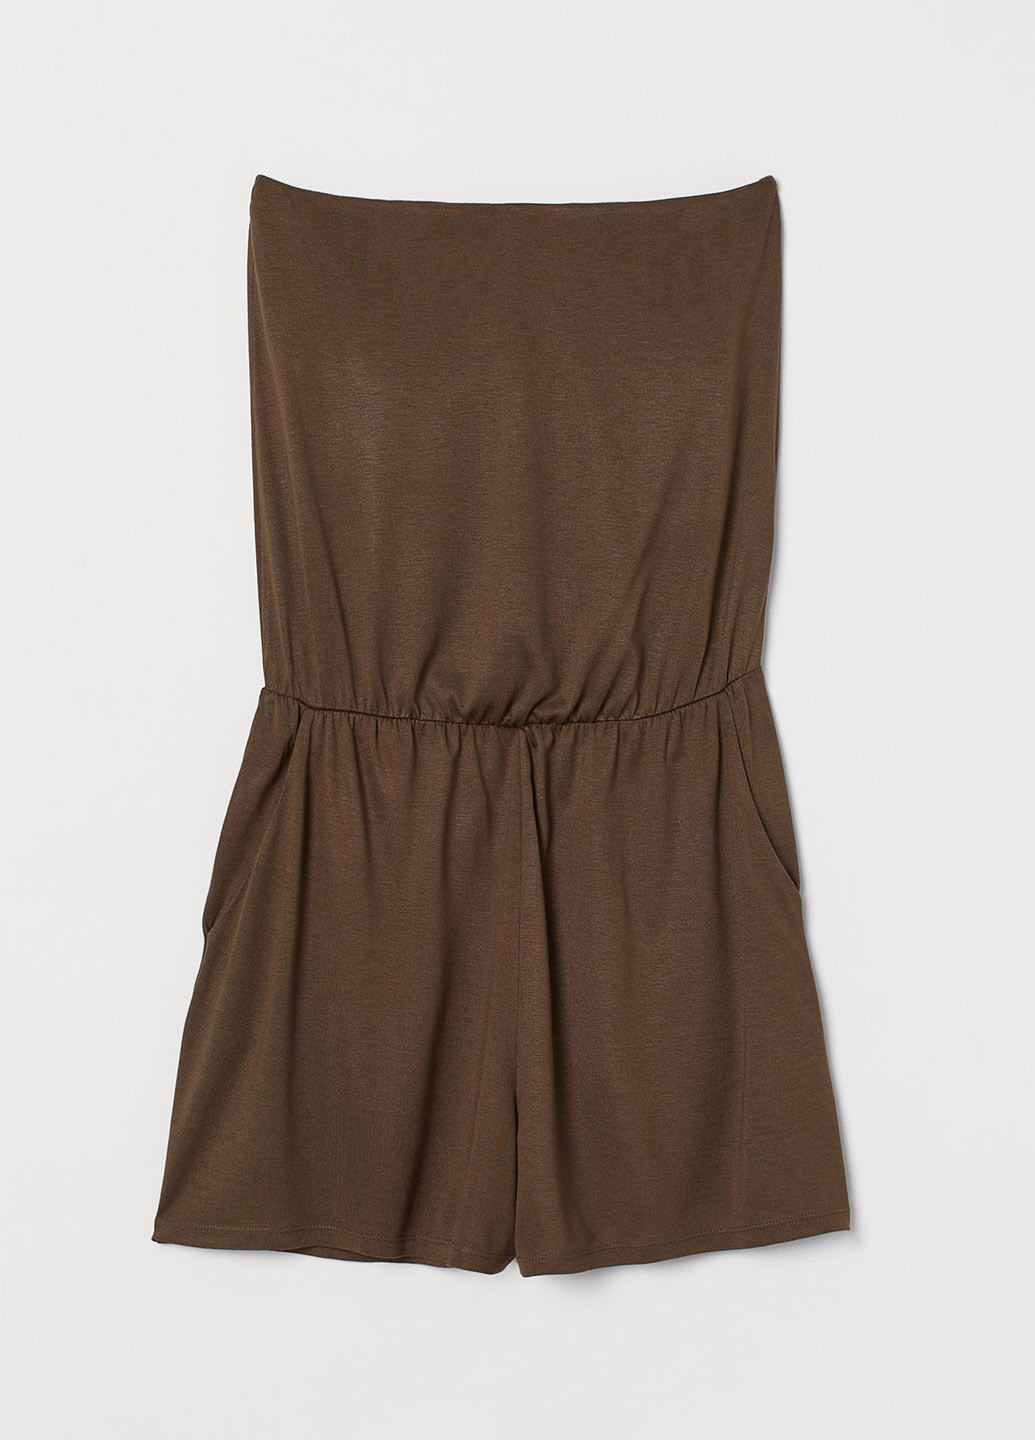 Комбінезон H&M комбінезон-шорти однотонний коричневий кежуал віскоза, трикотаж